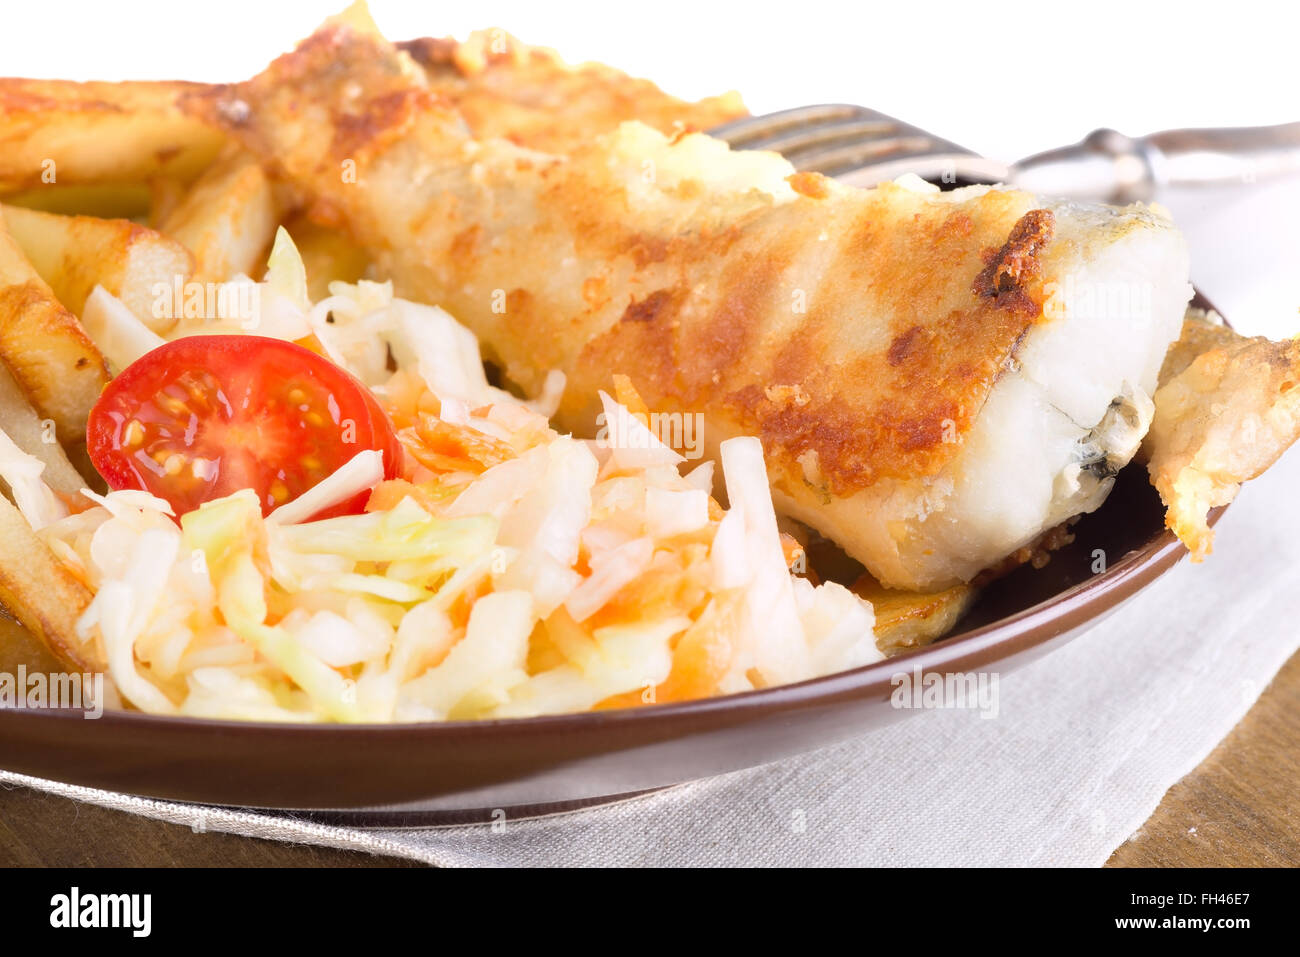 Pesce fritto - Zafferano merluzzo con patate e verdura Foto Stock